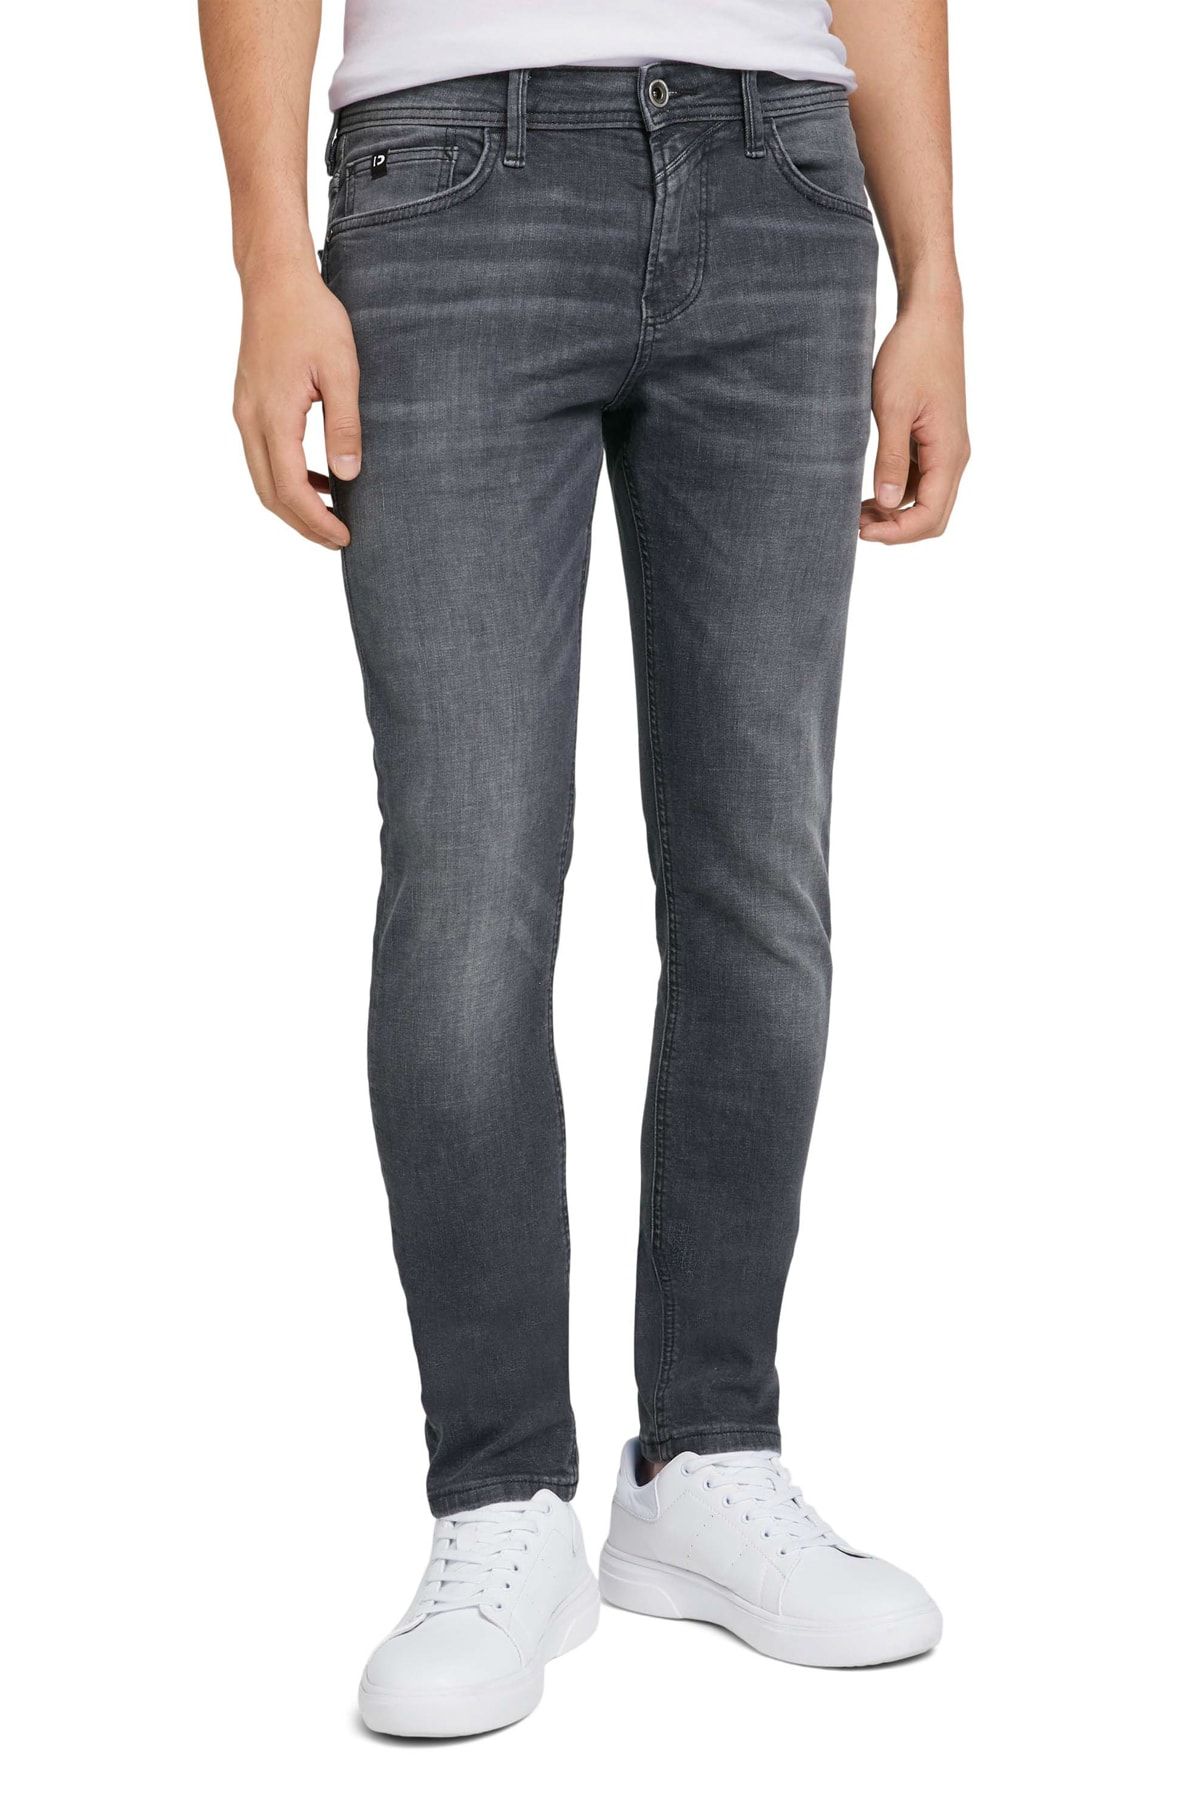 Denim Gray Jeans Trendyol - - Tom - Skinny Tailor